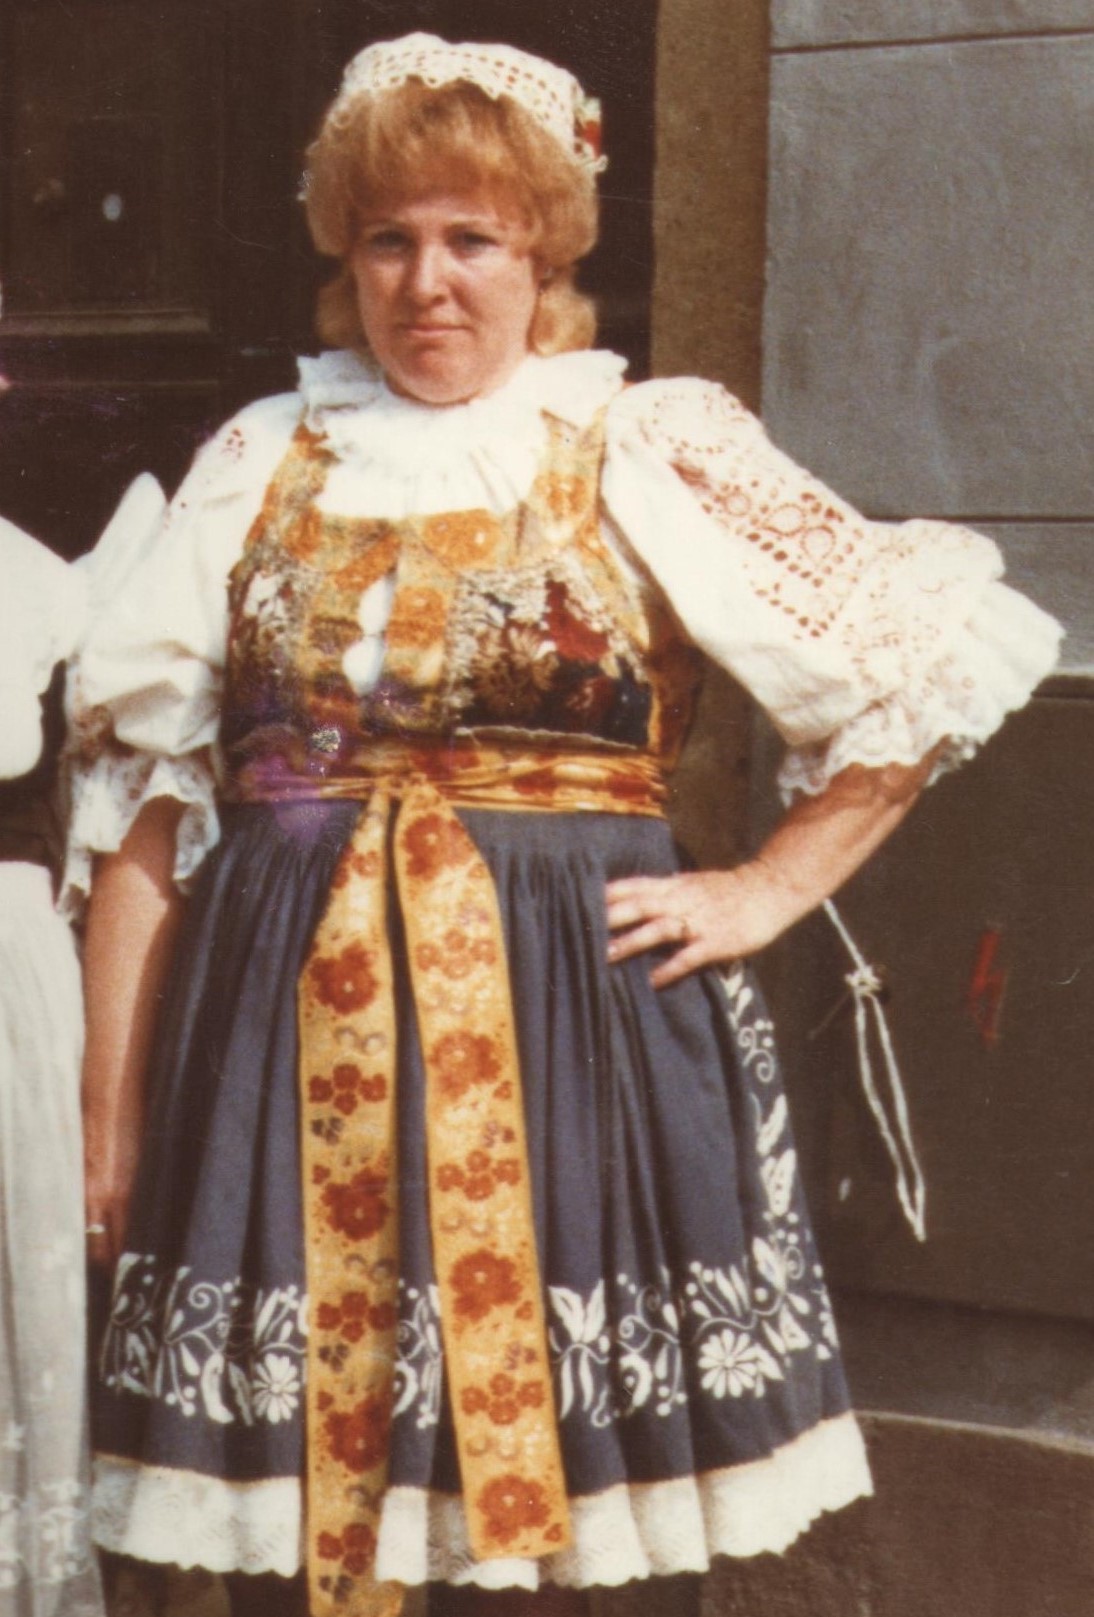 Jana Kučerová in 1989 at the welcome ceremony in Jaroměř